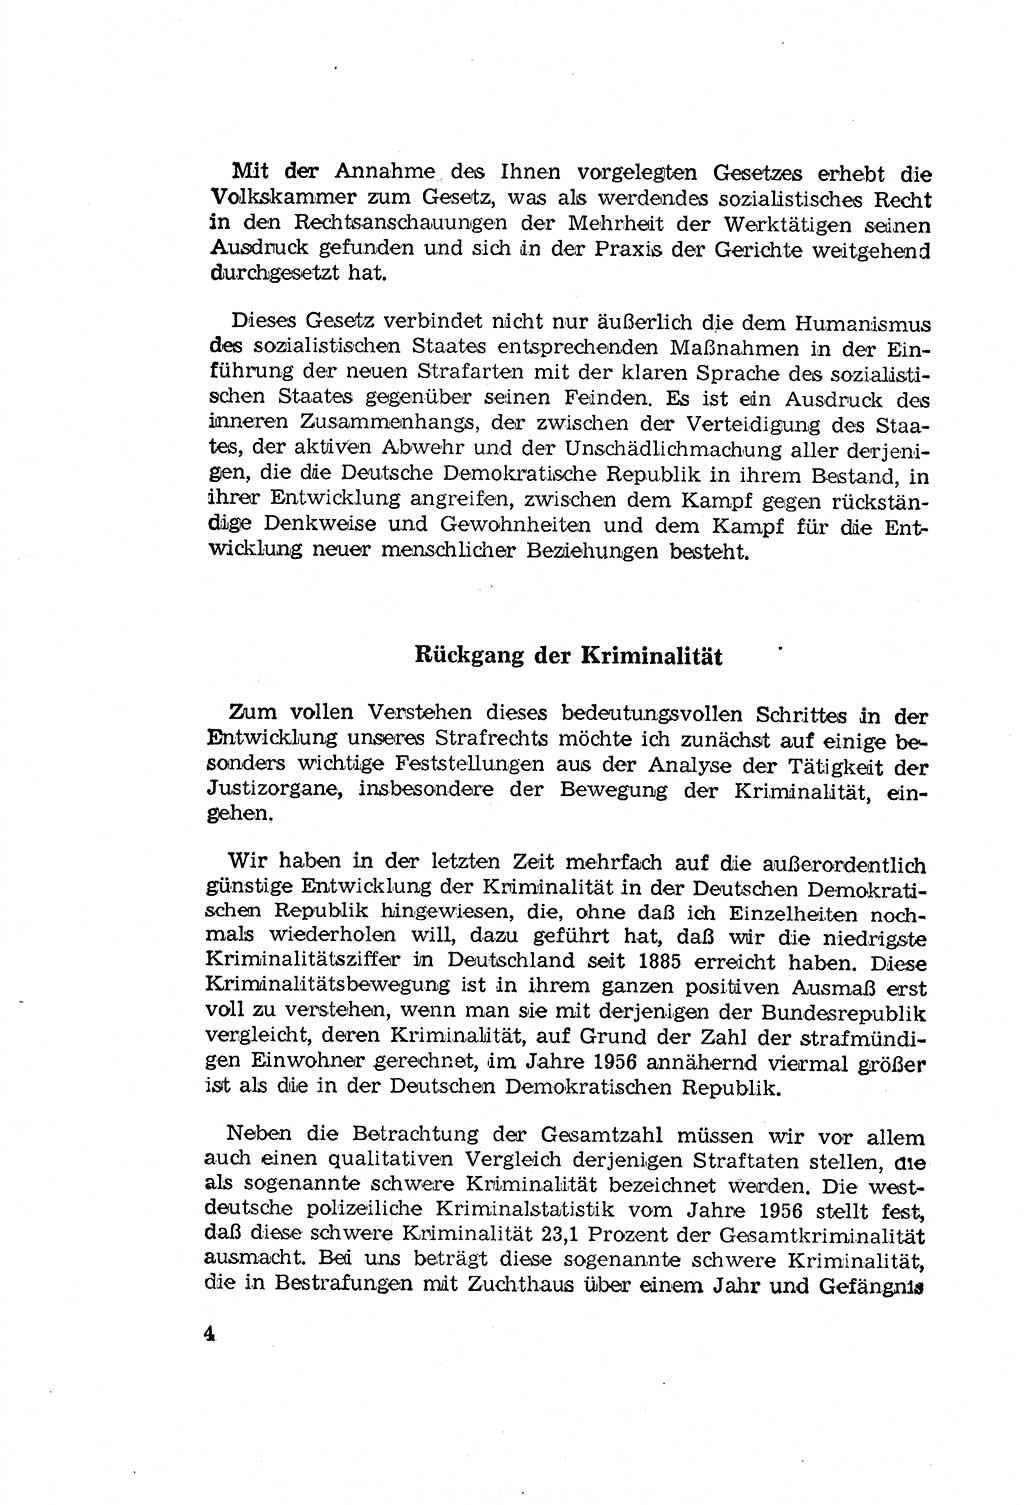 Zum Erlaß des Gesetzes zur Ergänzung des Strafgesetzbuches (StGB), Strafergänzungsgesetz (StEG) [Deutsche Demokratische Republik (DDR)] 1957, Seite 4 (StGB StEG DDR 1957, S. 4)